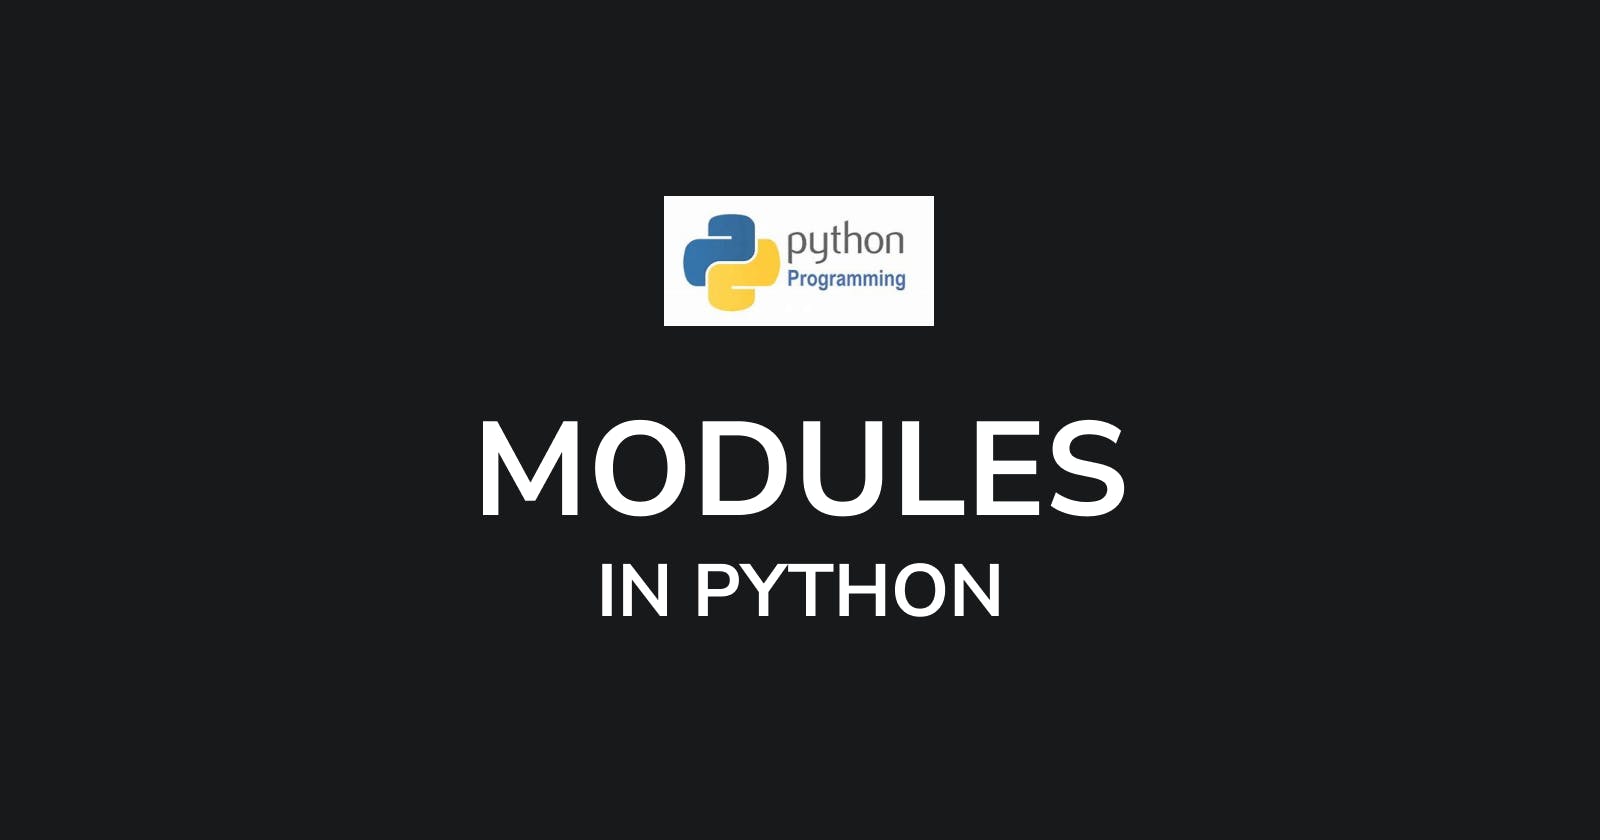 Modules in Python